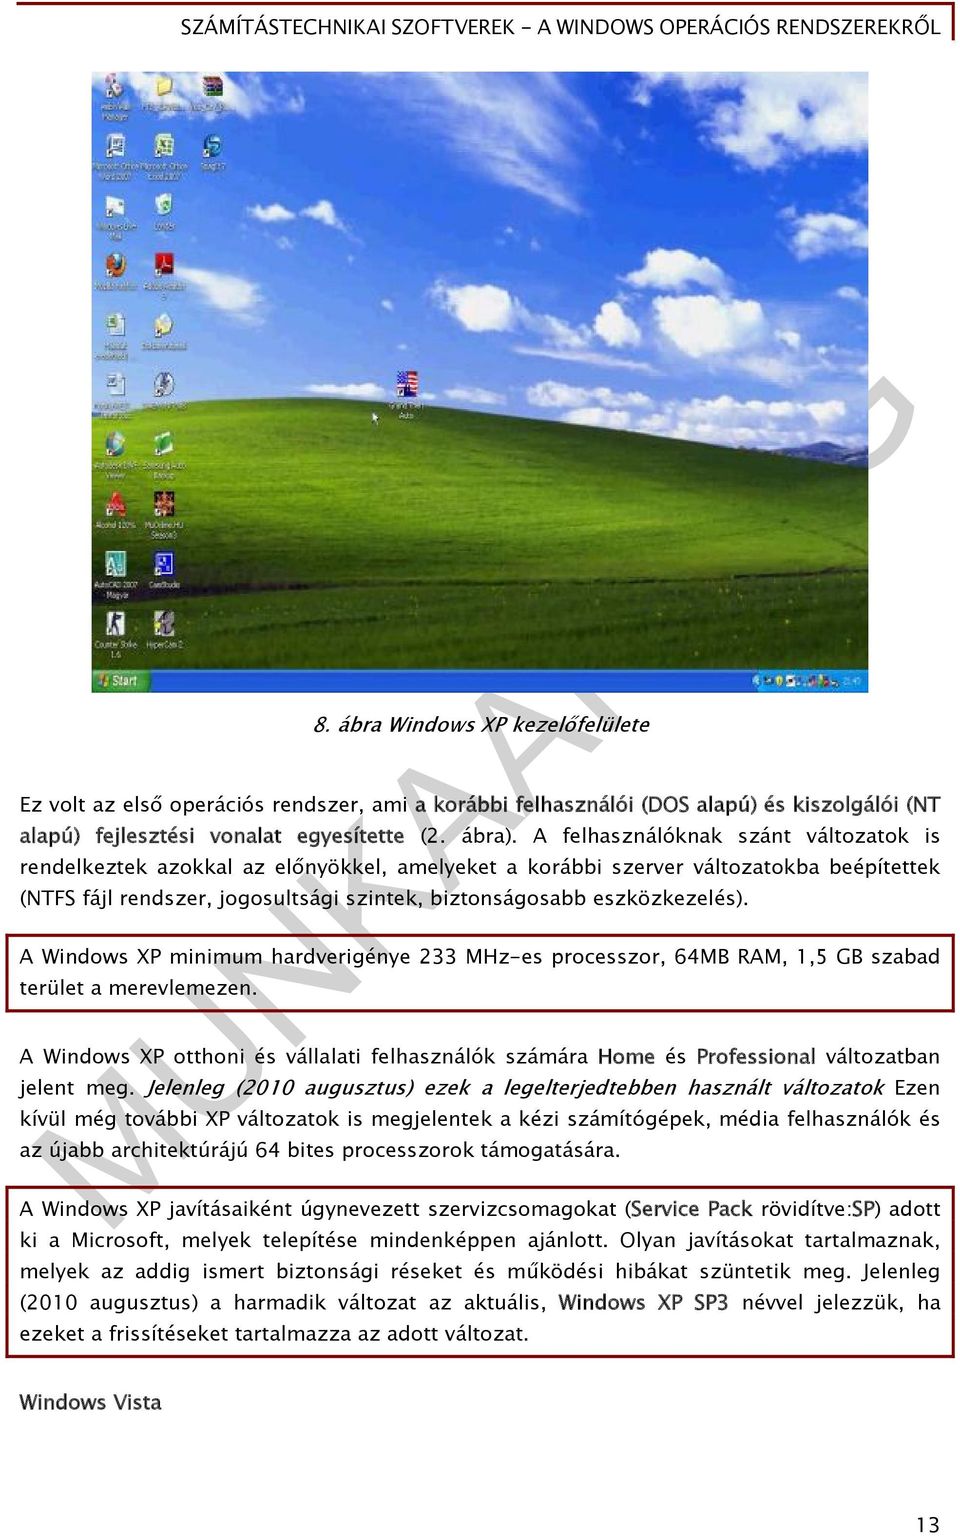 A Windows XP minimum hardverigénye 233 MHz-es processzor, 64MB RAM, 1,5 GB szabad terület a merevlemezen.